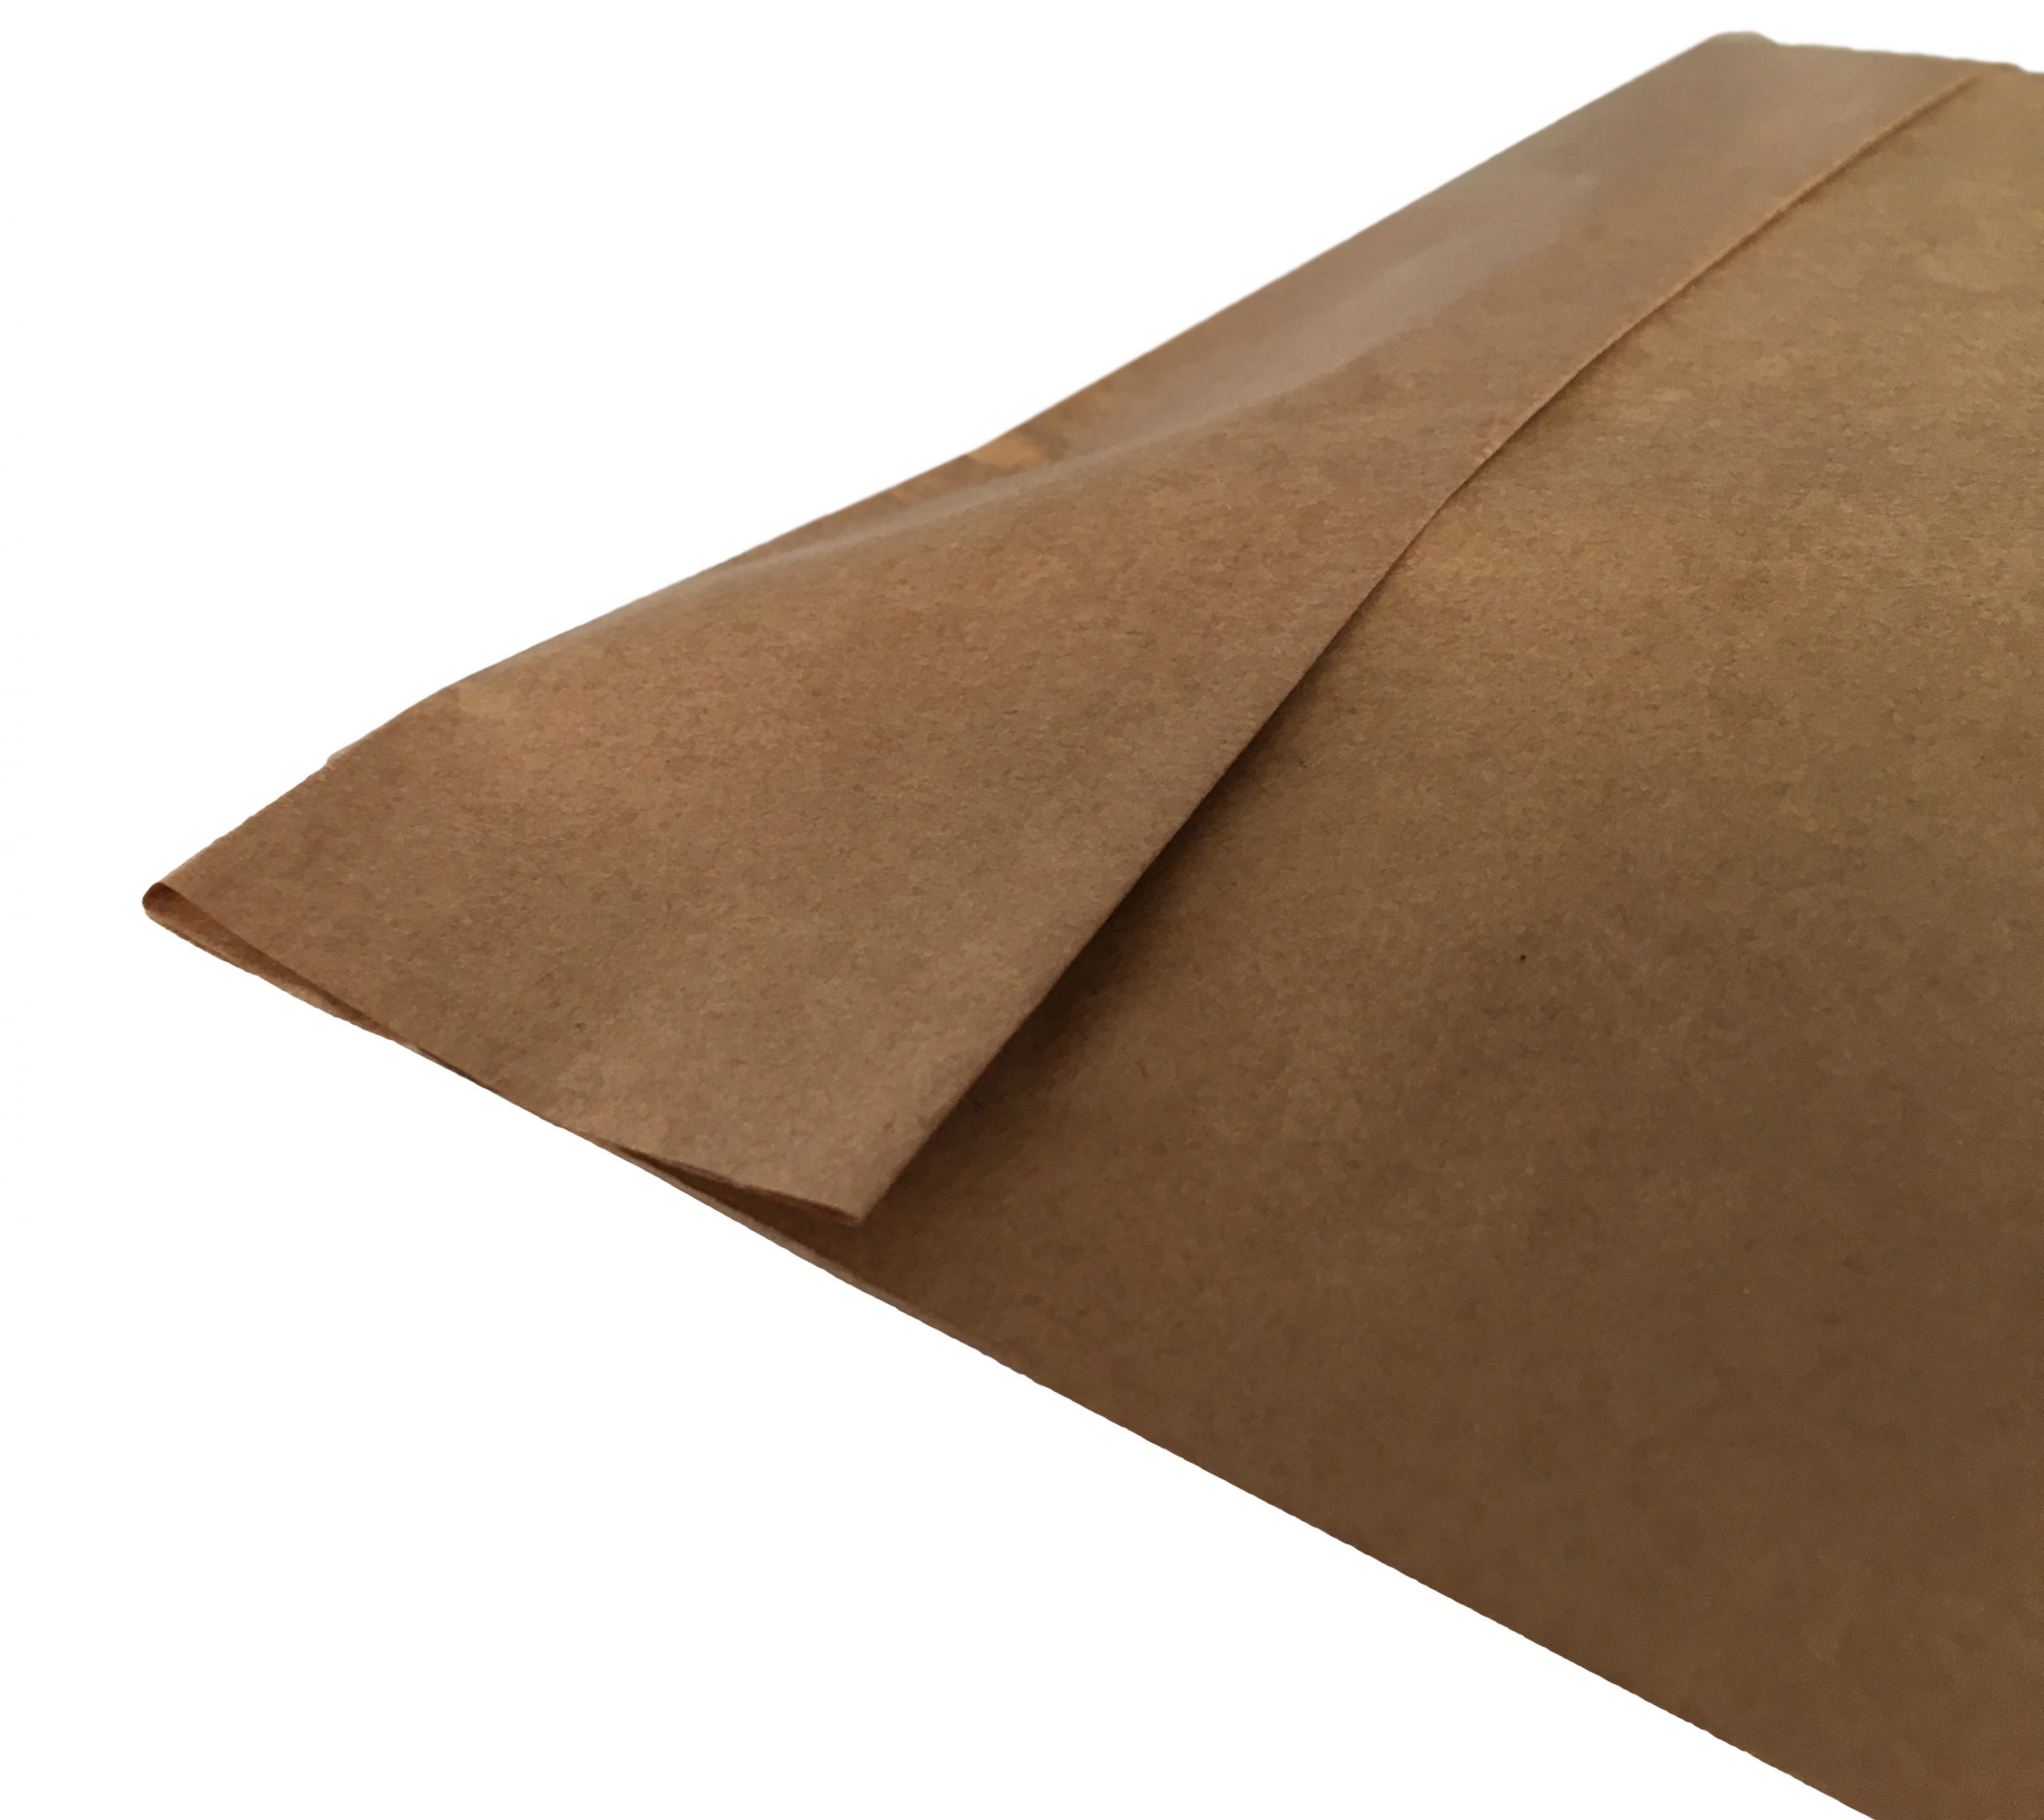 Χάρτινος σάκος αποστολών courier (με κάτω πιέτα) 50+15/42 εκ. (κιβώτιο 500 τμχ)